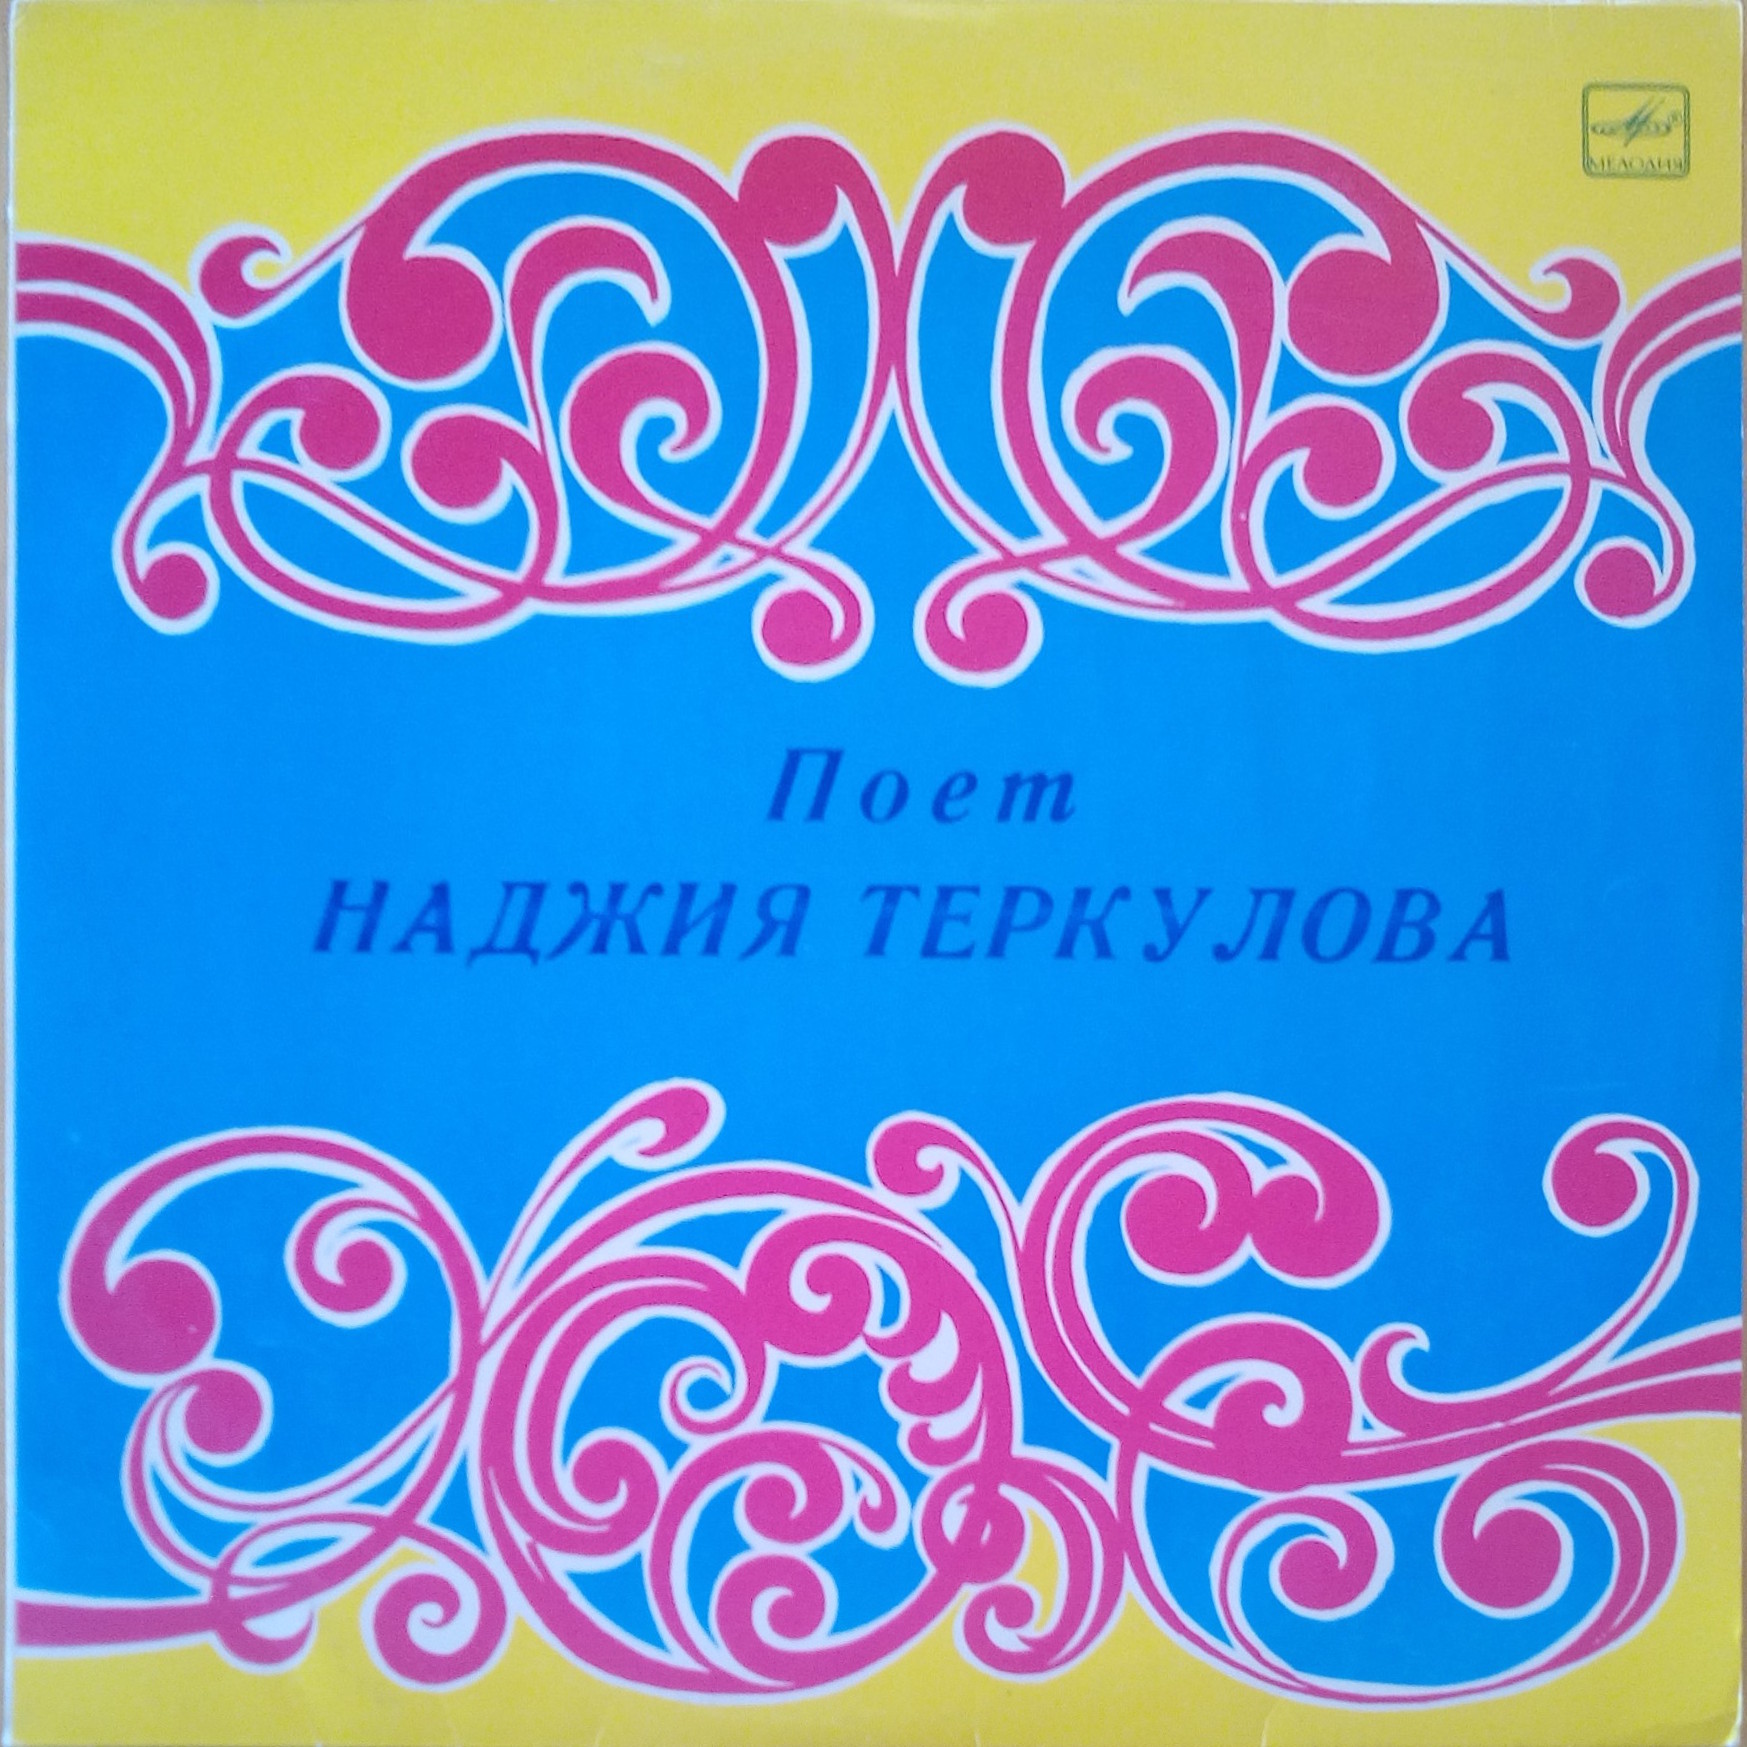 Наджия ТЕРКУЛОВА (на татарском языке)